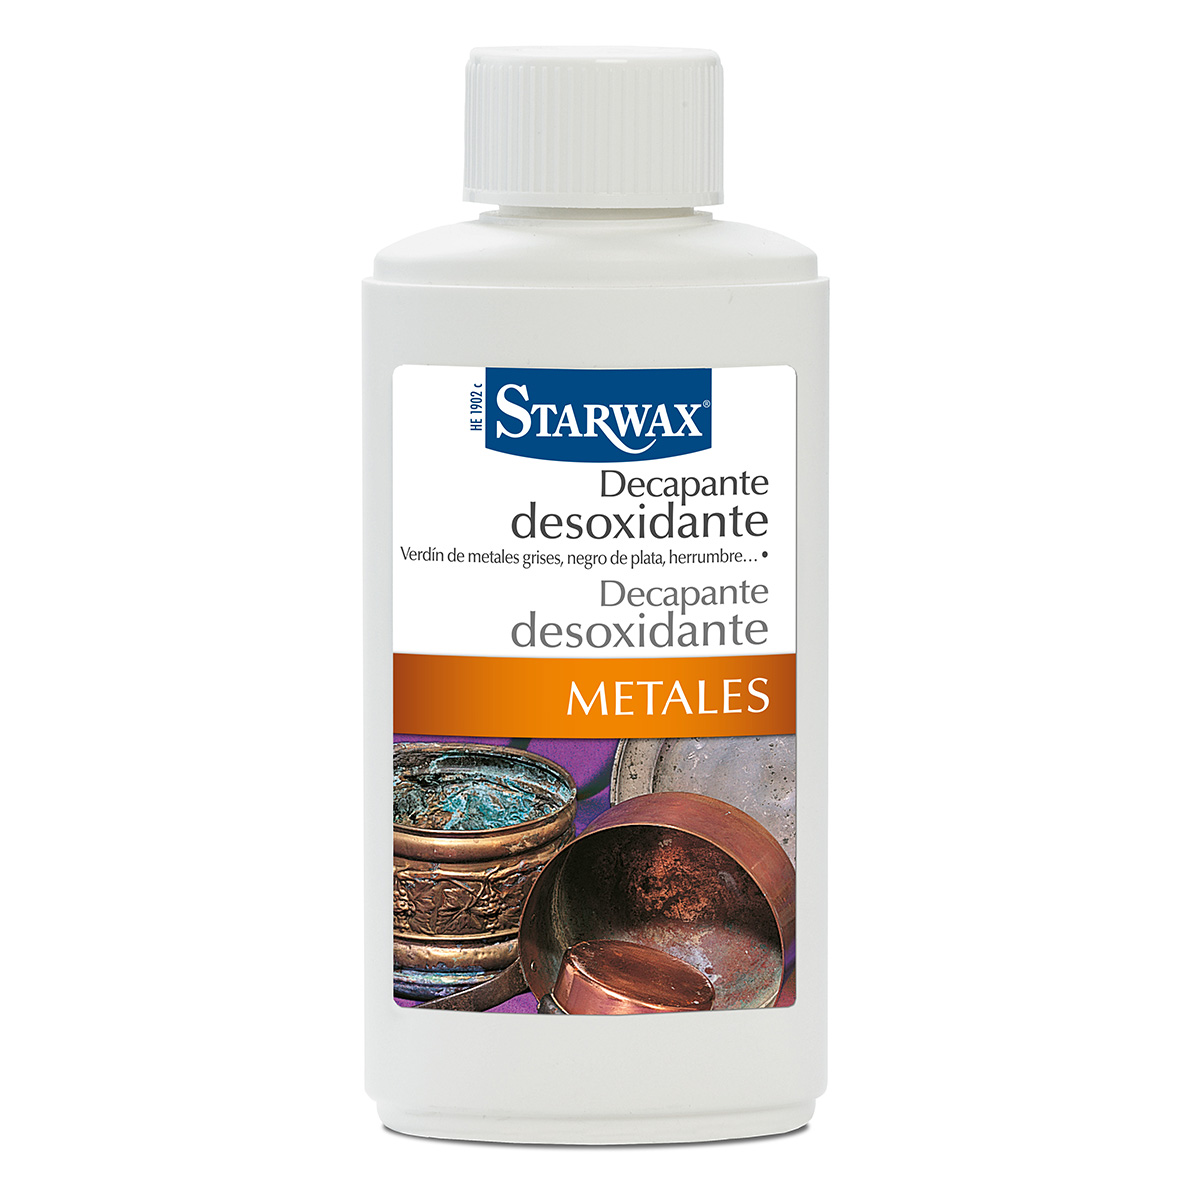 Decapante desoxidante metales - Starwax